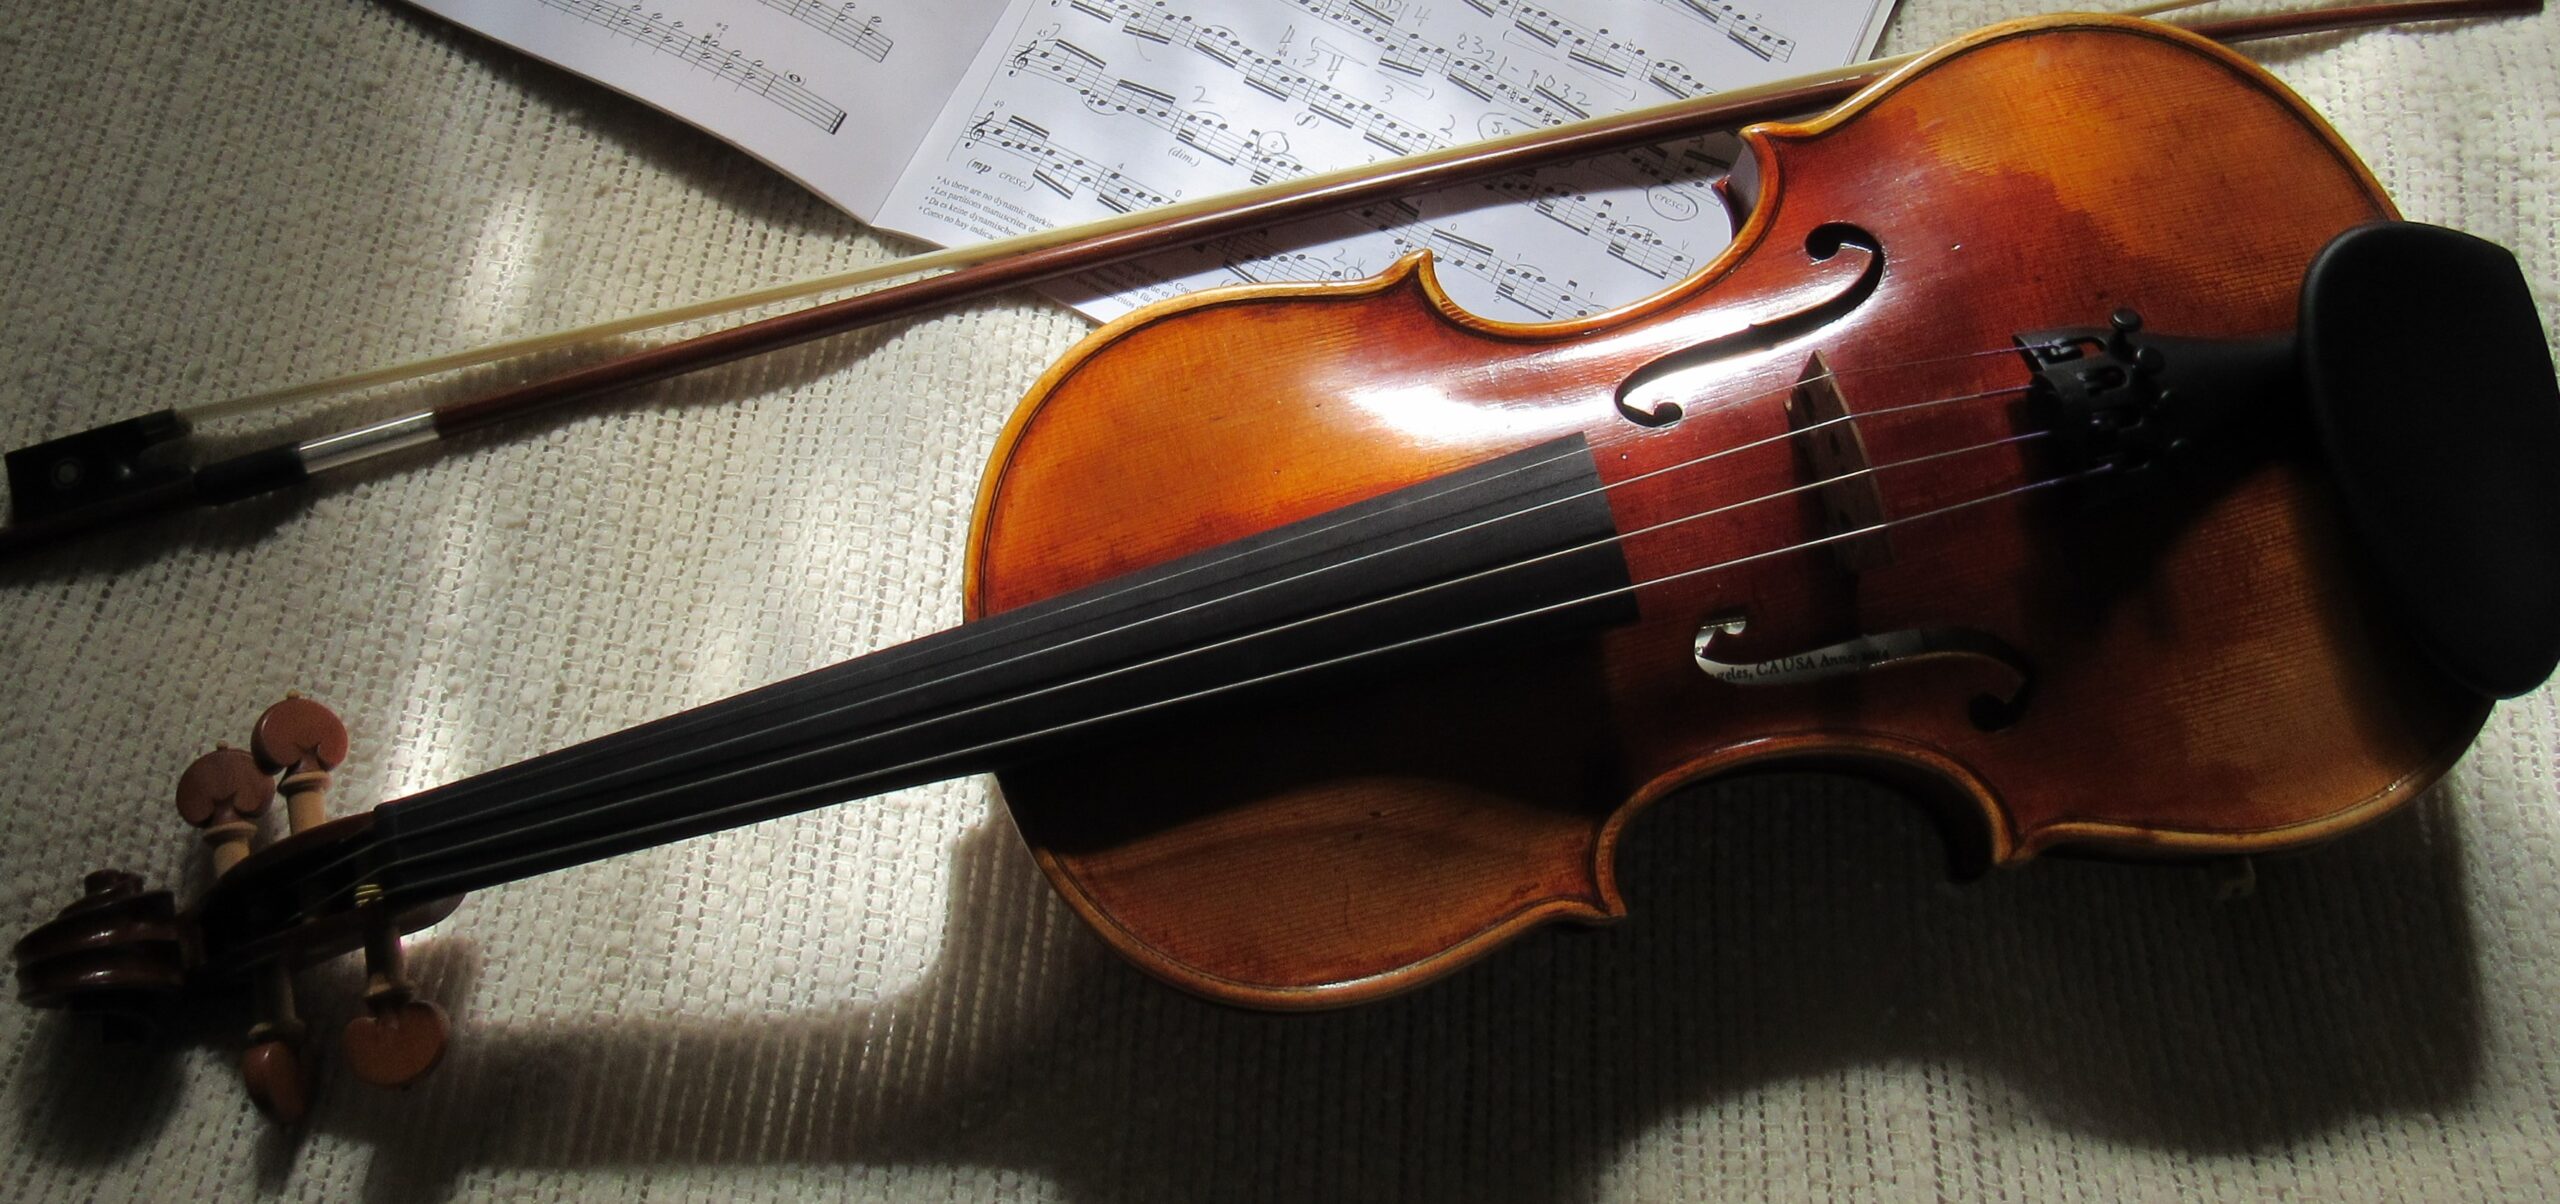 Wesley's violin